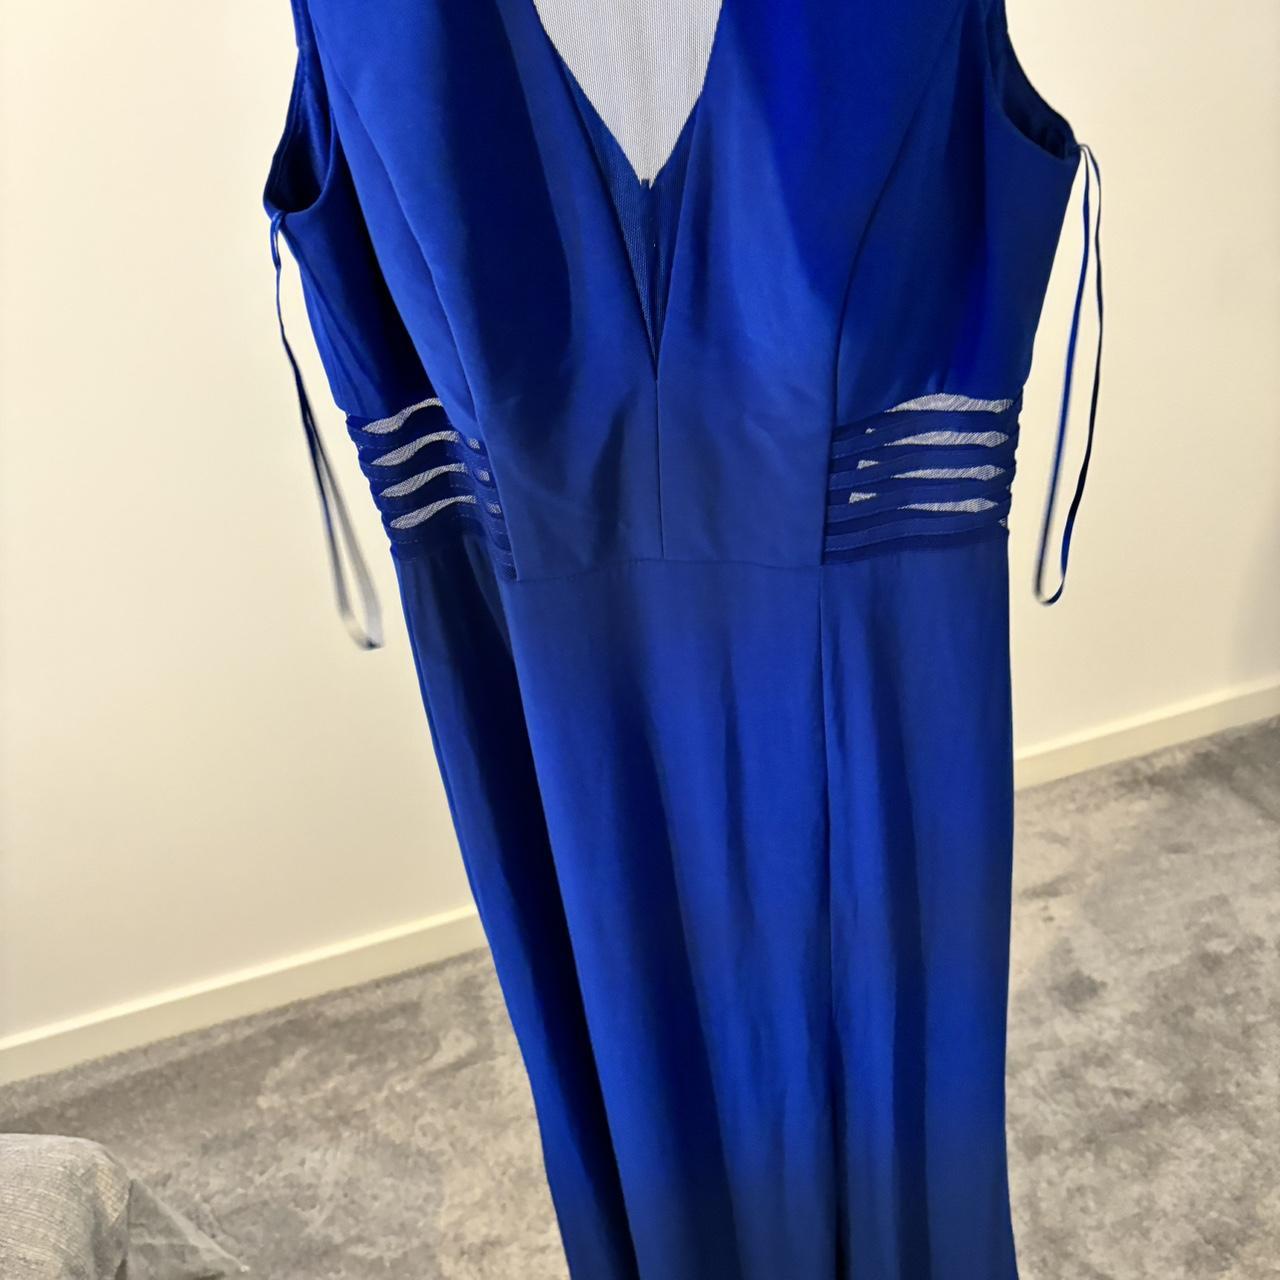 Electric blue morgan & co maxi dress size 9/10 I... - Depop